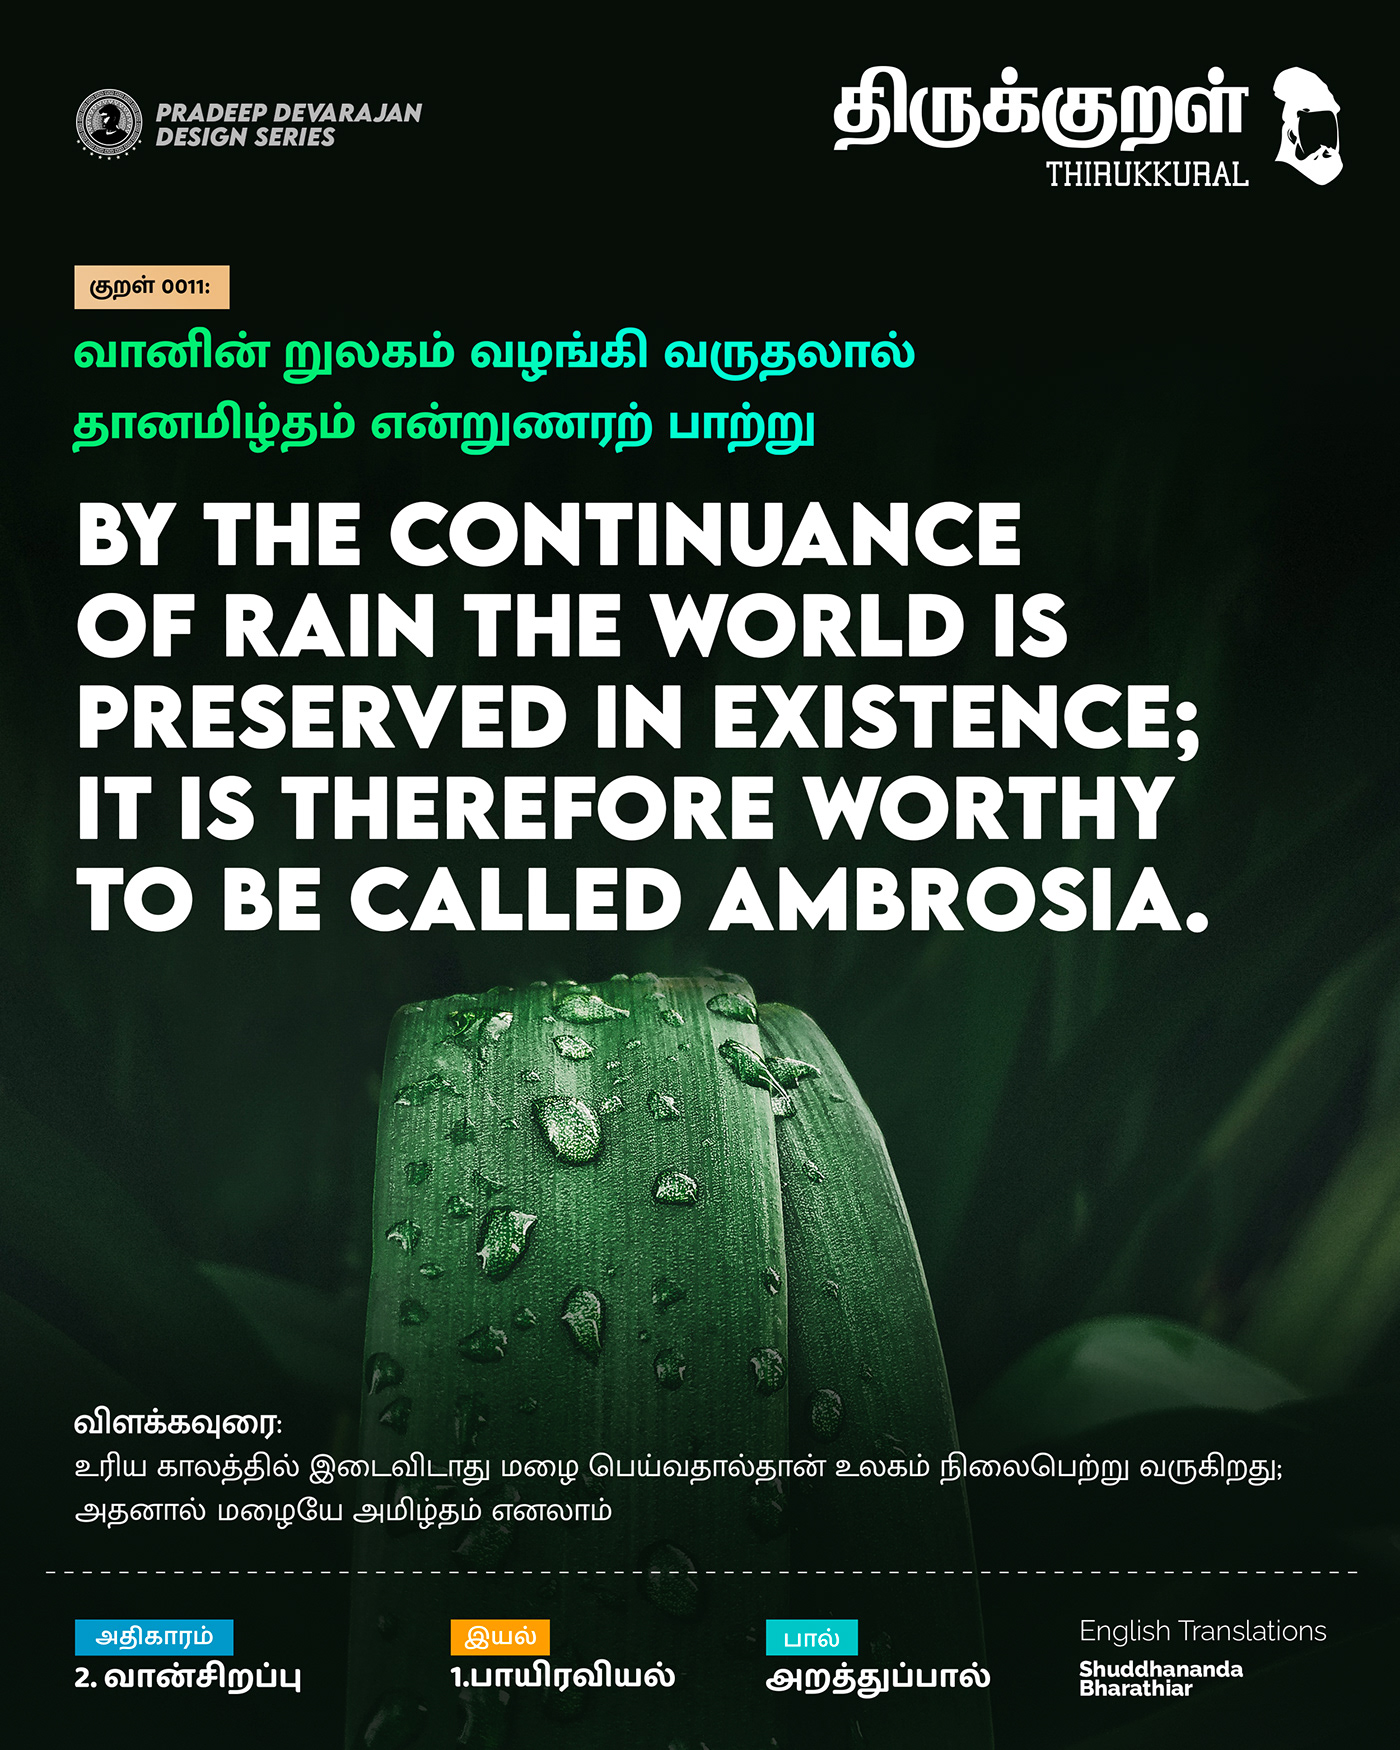 Thirukkural Design Series!
- Celebrating Tamil!
Universal book of principles